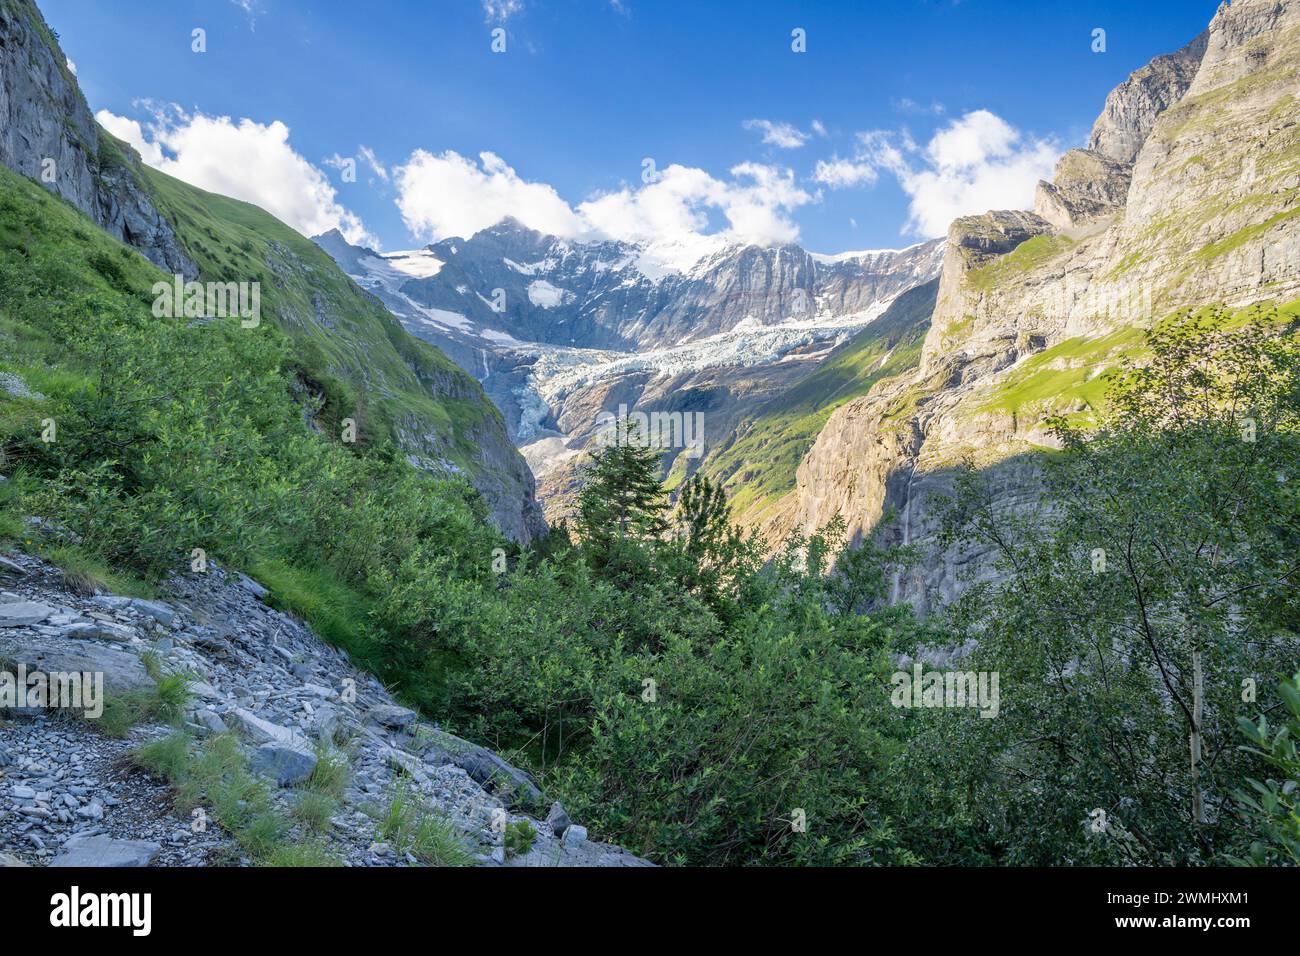 Das Massiv des Großen Fiescher Horns über dem Gletschertal - Schweiz - Grindelwald. Stockfoto